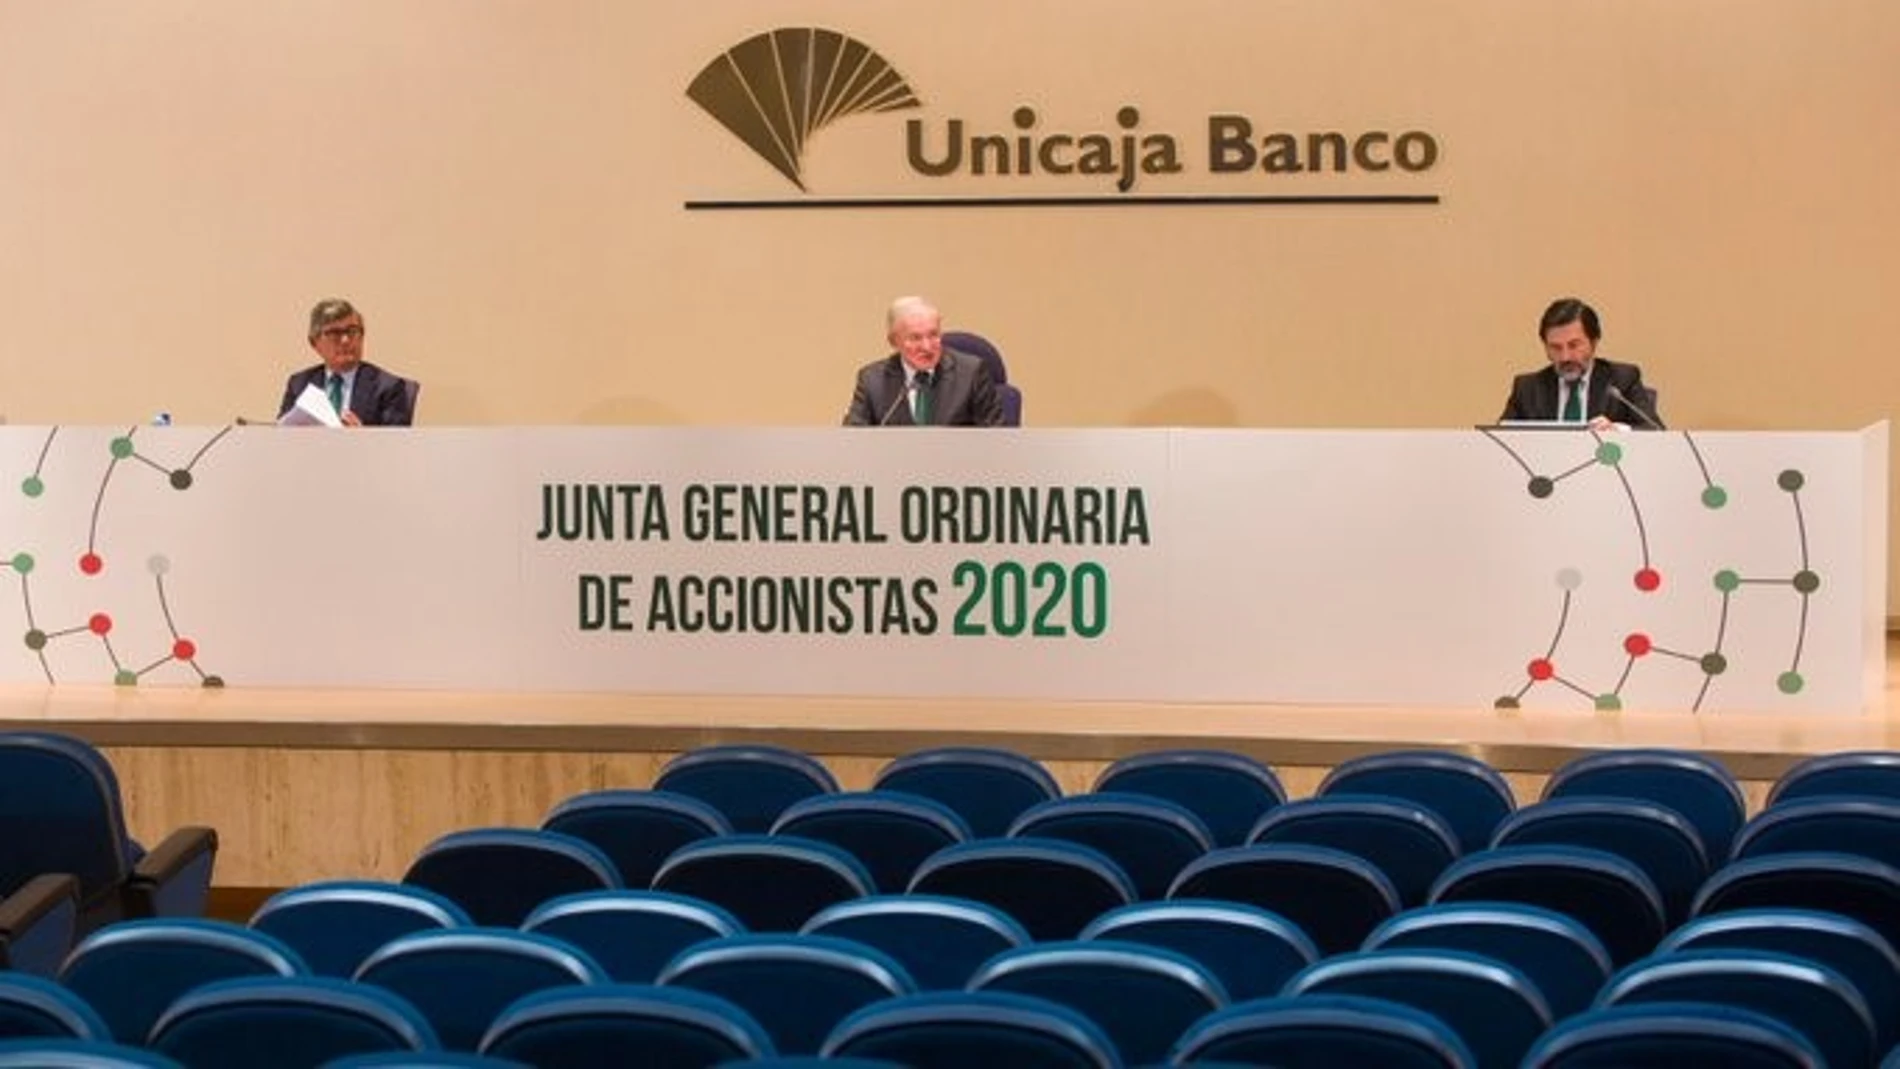 La Junta de Accionistas de Unicaja Banco aprueba cuentas de 2019 y destaca su "fortaleza financiera" ante coronavirus